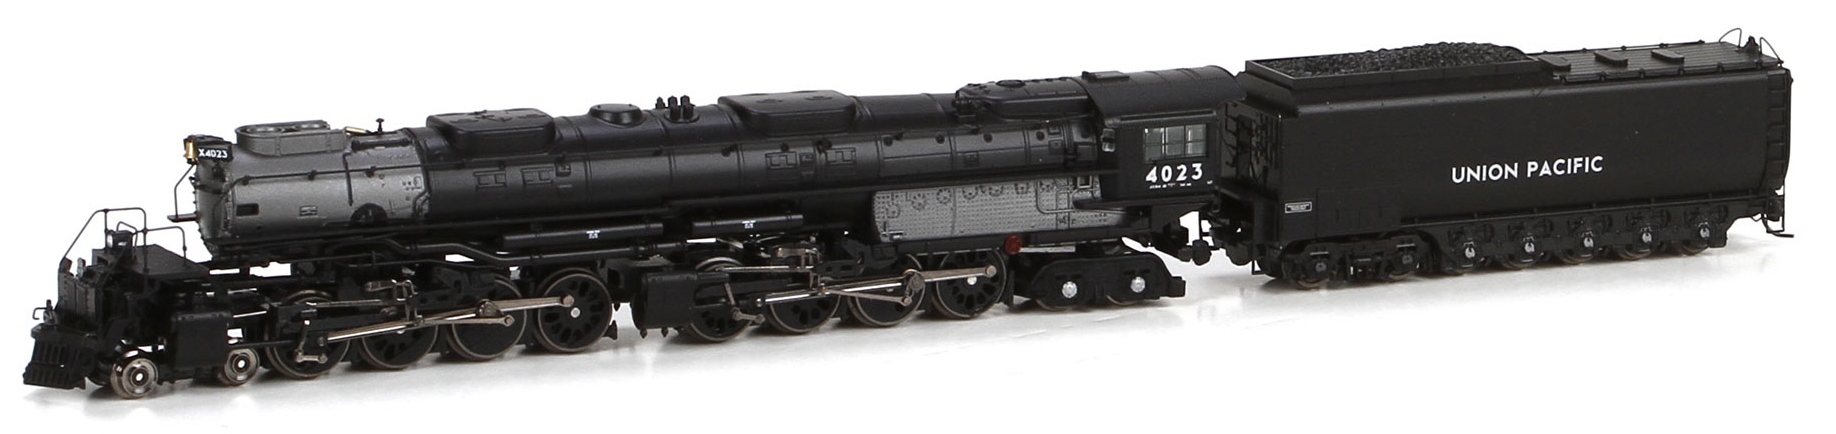 big boy n scale locomotives